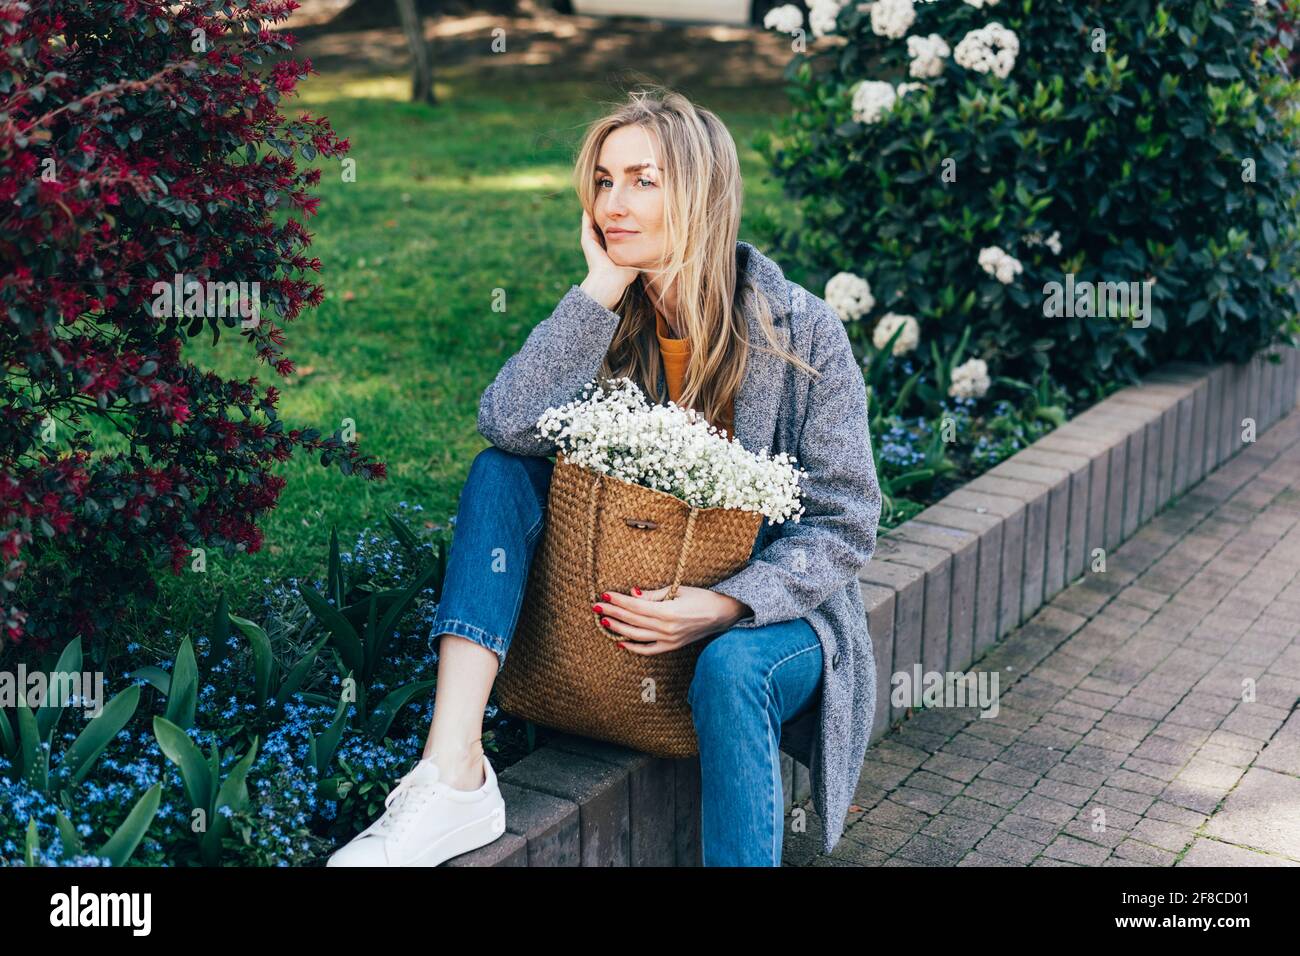 Jolie femme ennuyée en manteau gris assis près de la fleur Lit et rêve..femme caucasienne élégante posant à l'extérieur parmi les fleurs et robuste Banque D'Images